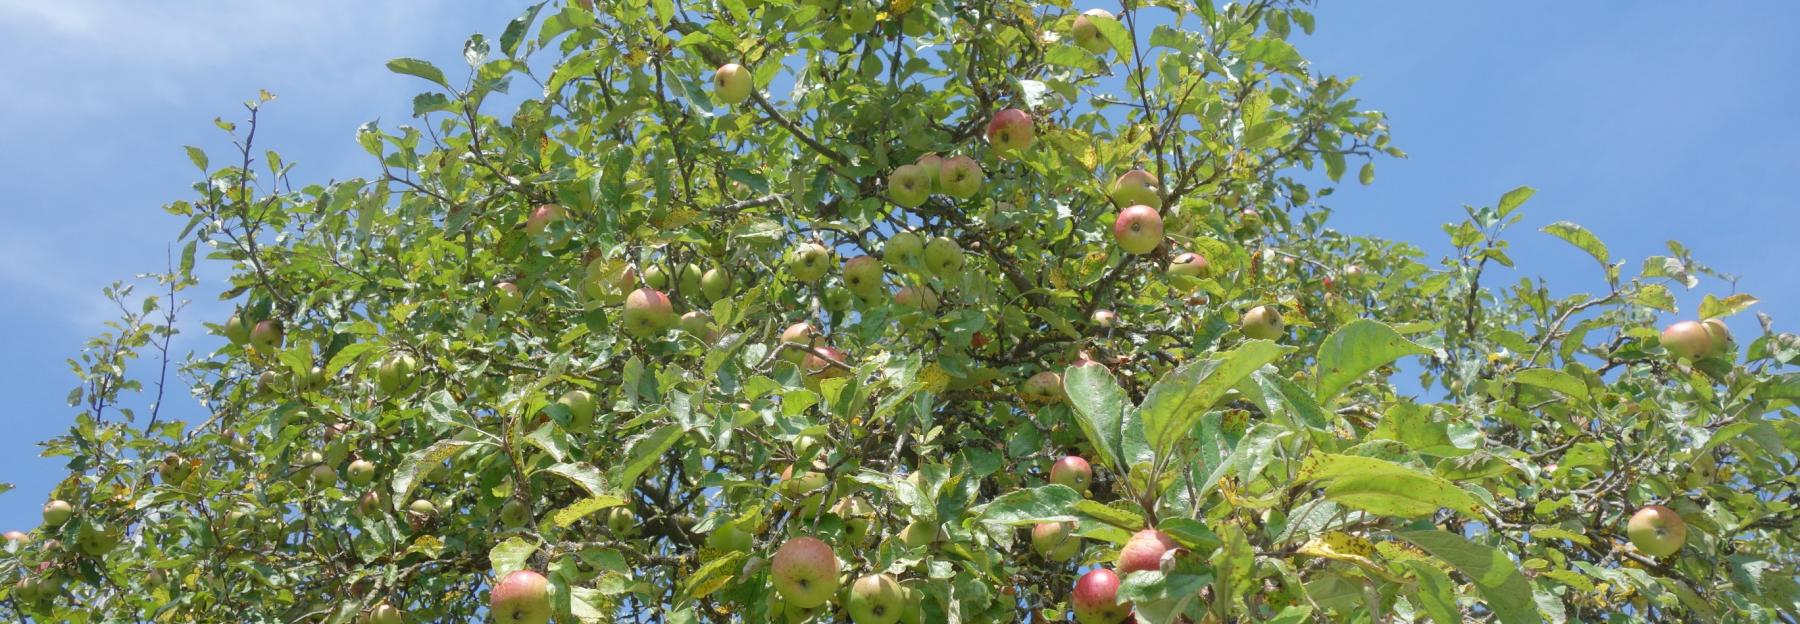 Apfelbaum - Krone mit Früchten